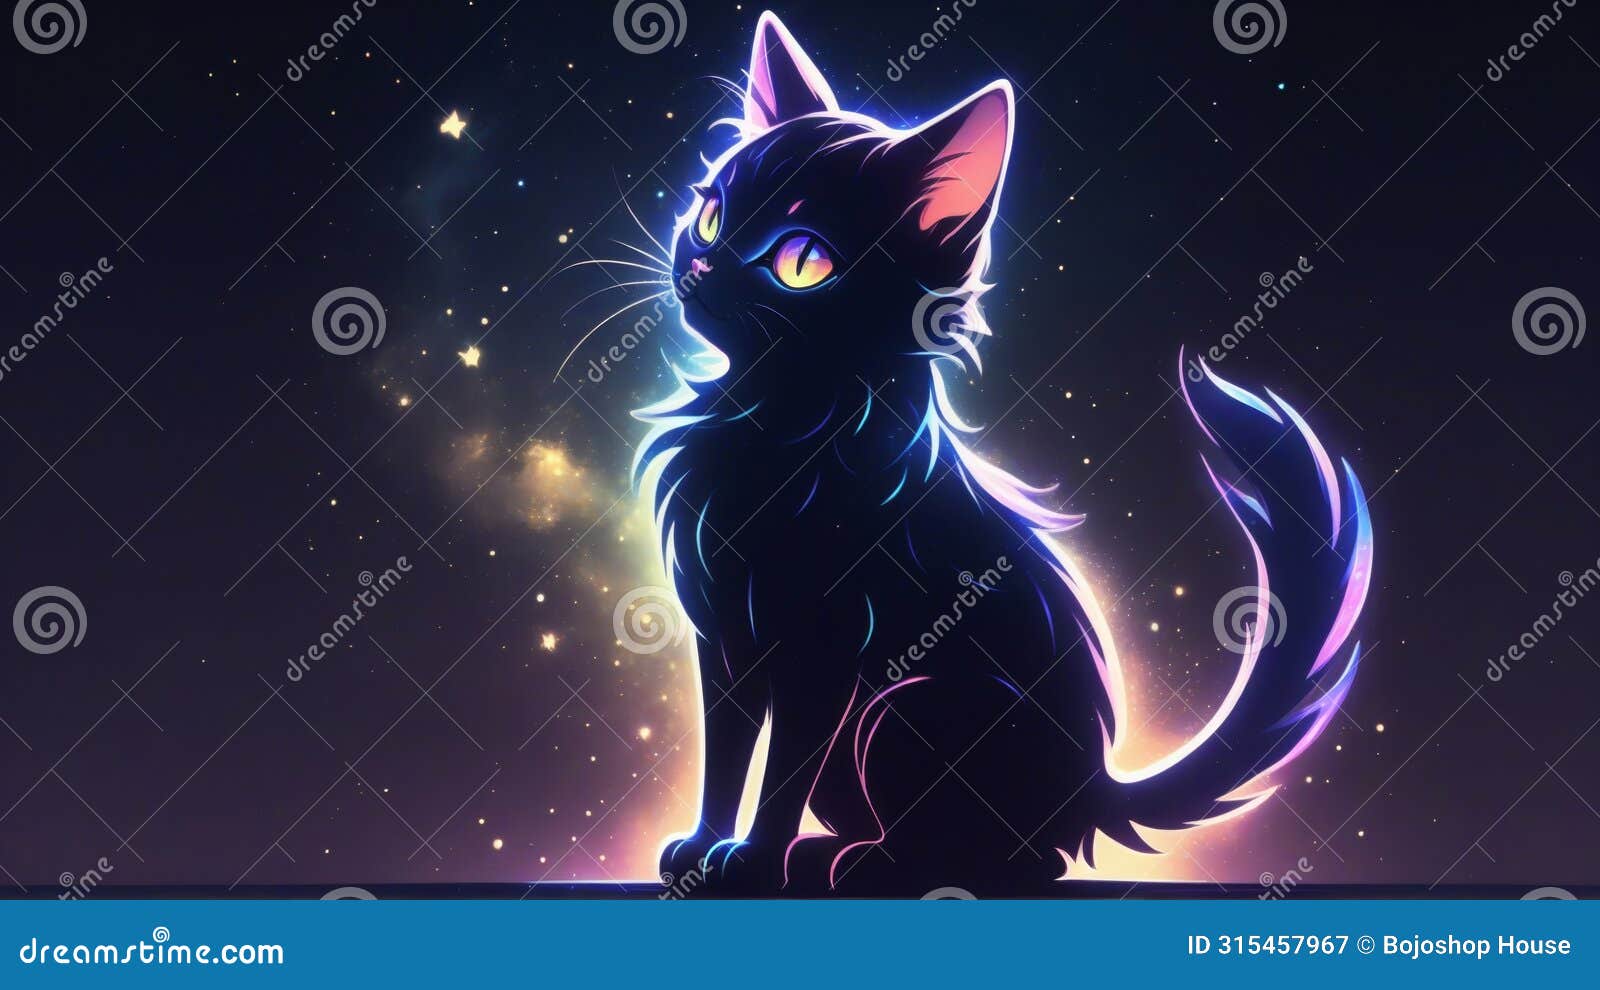 cat inmidnight feline serenade under luna's glow